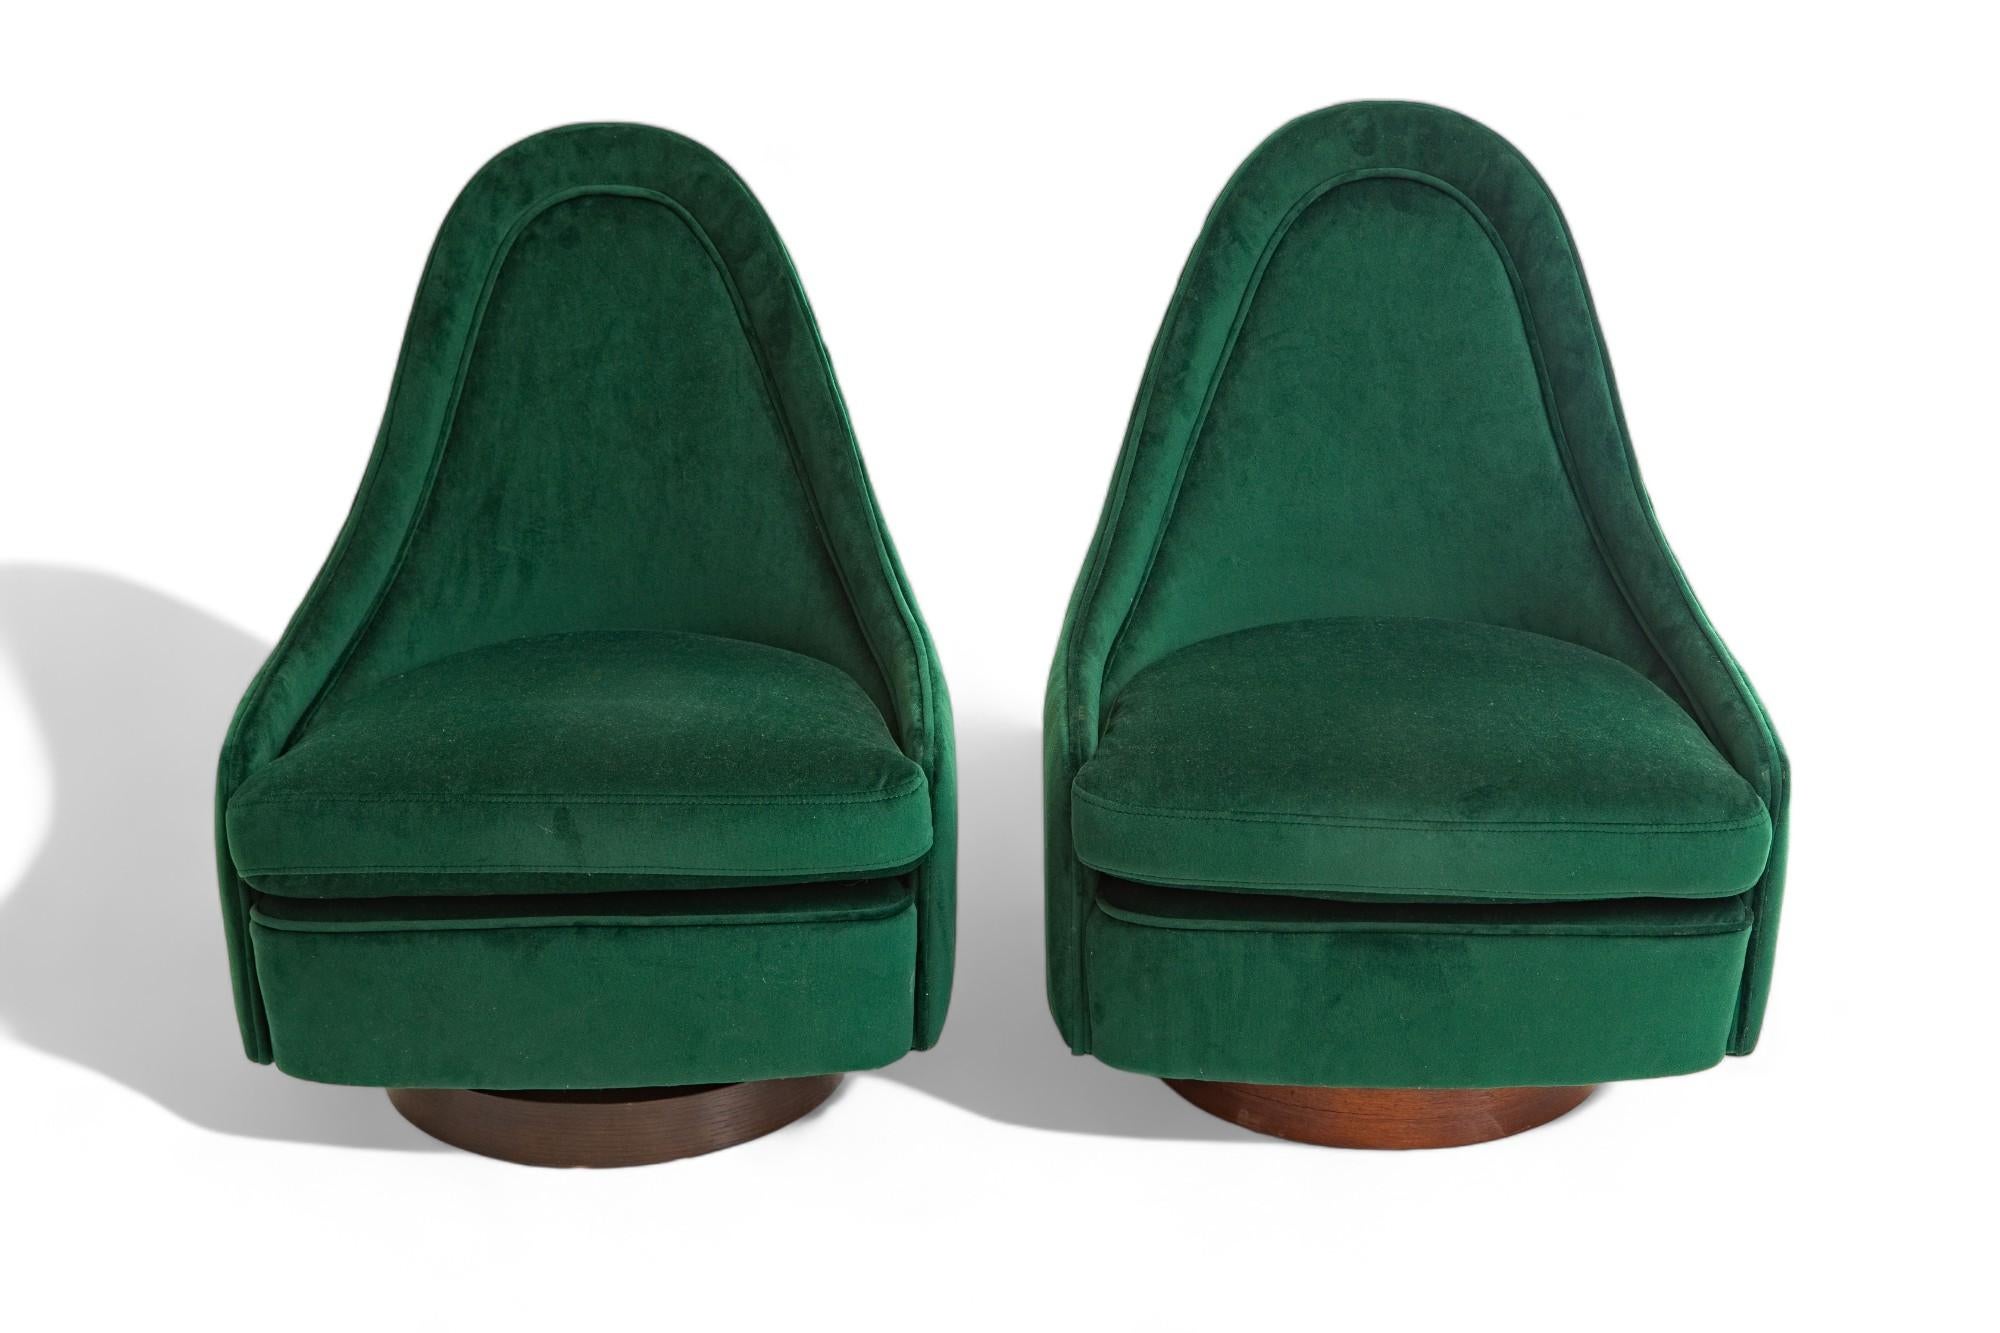 Mid-Century Modern Petites chaises longues pivotantes et modernes du milieu du siècle dernier de Milo Baughman en vente